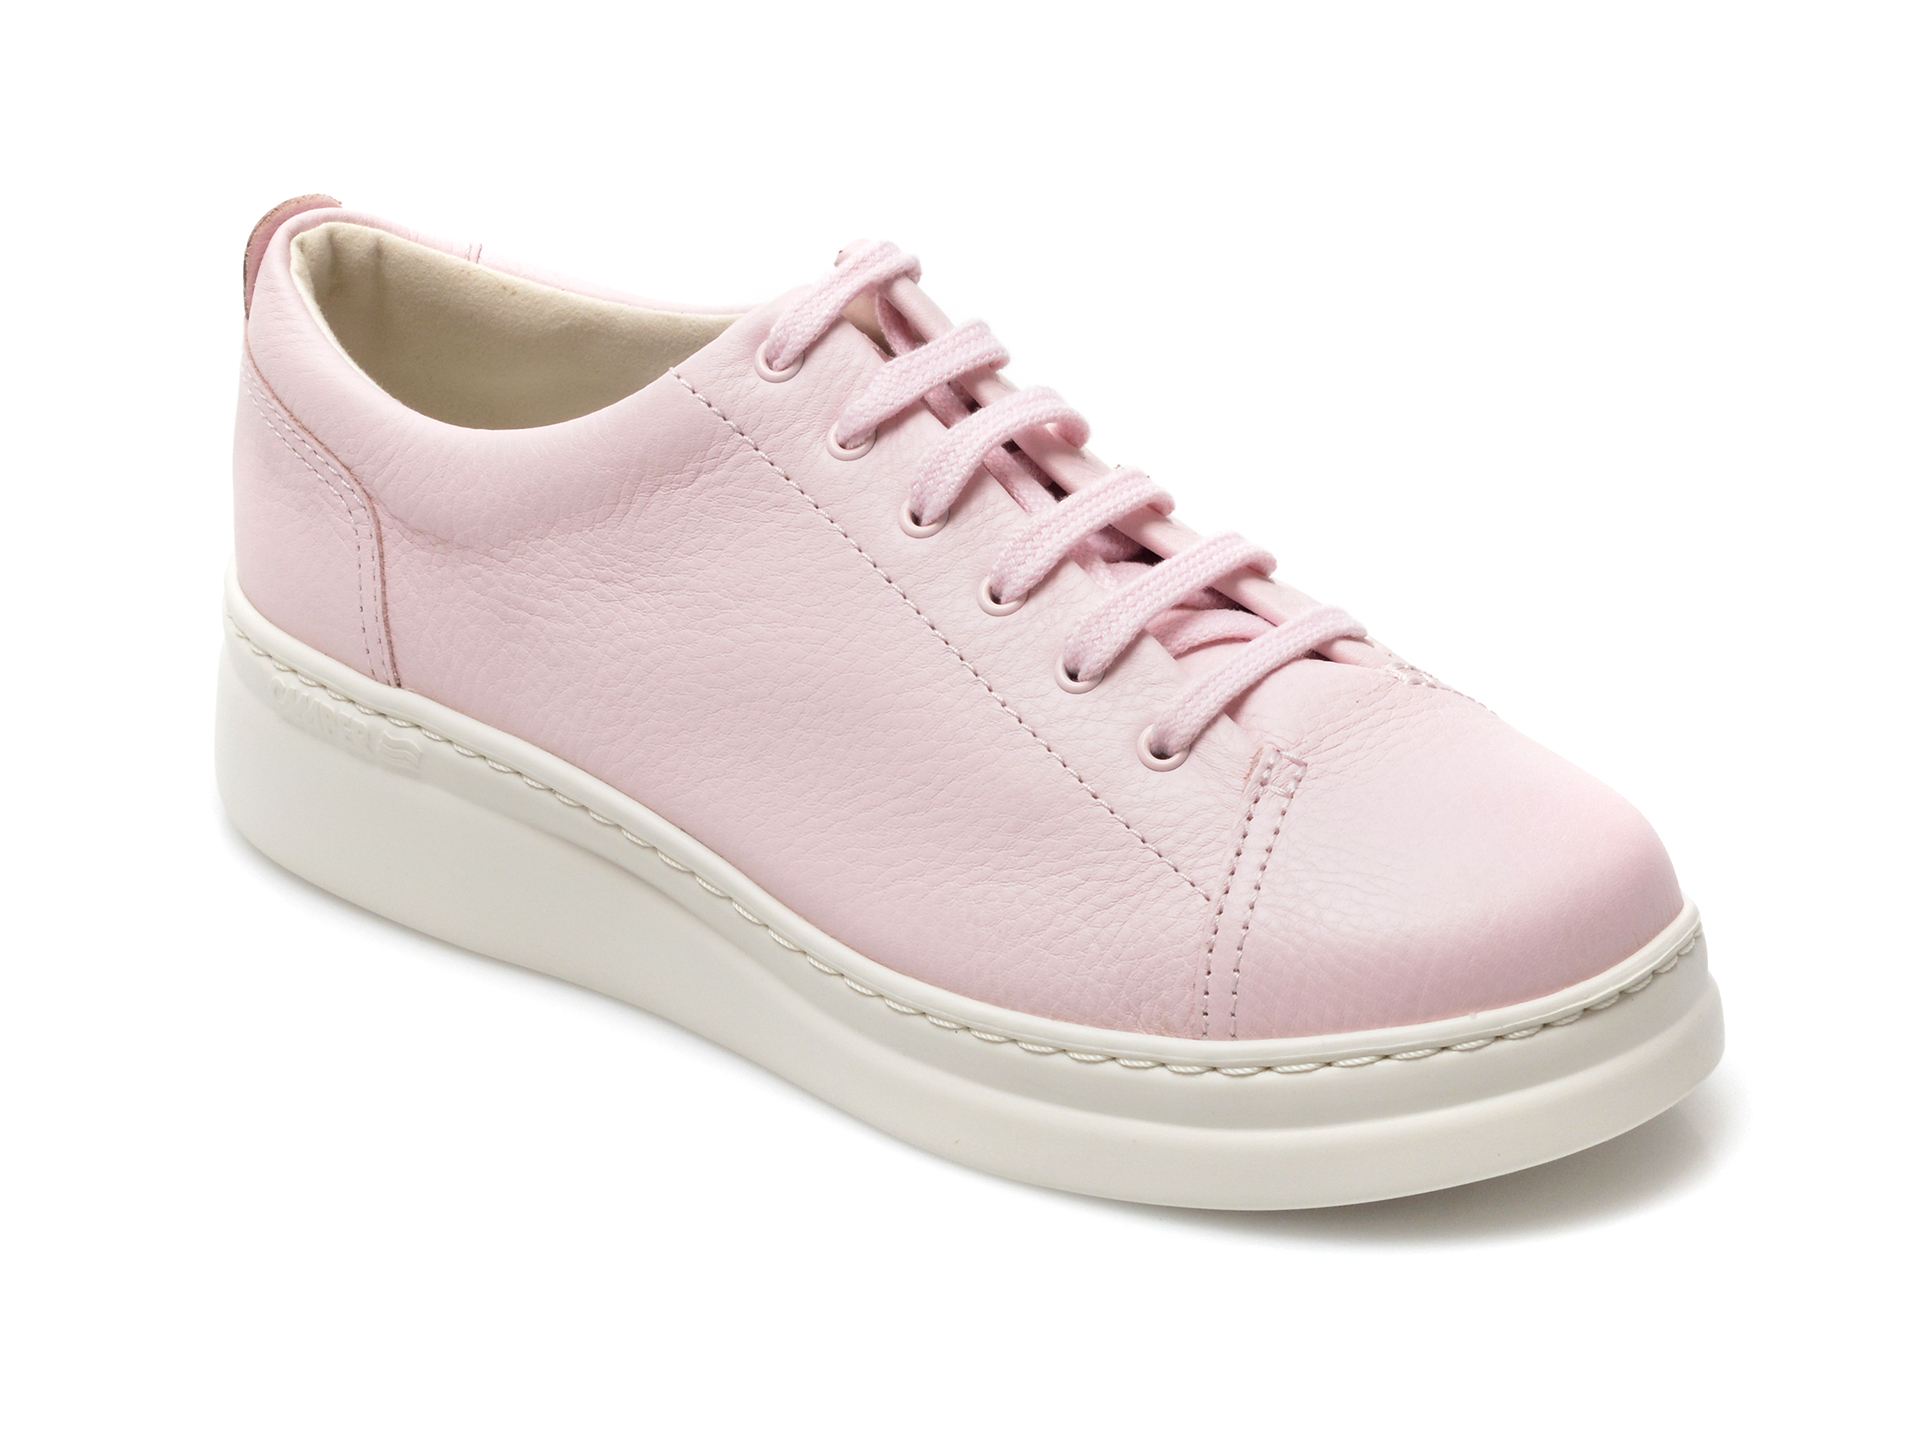 Pantofi CAMPER roz, K200508, din piele naturala Camper imagine noua